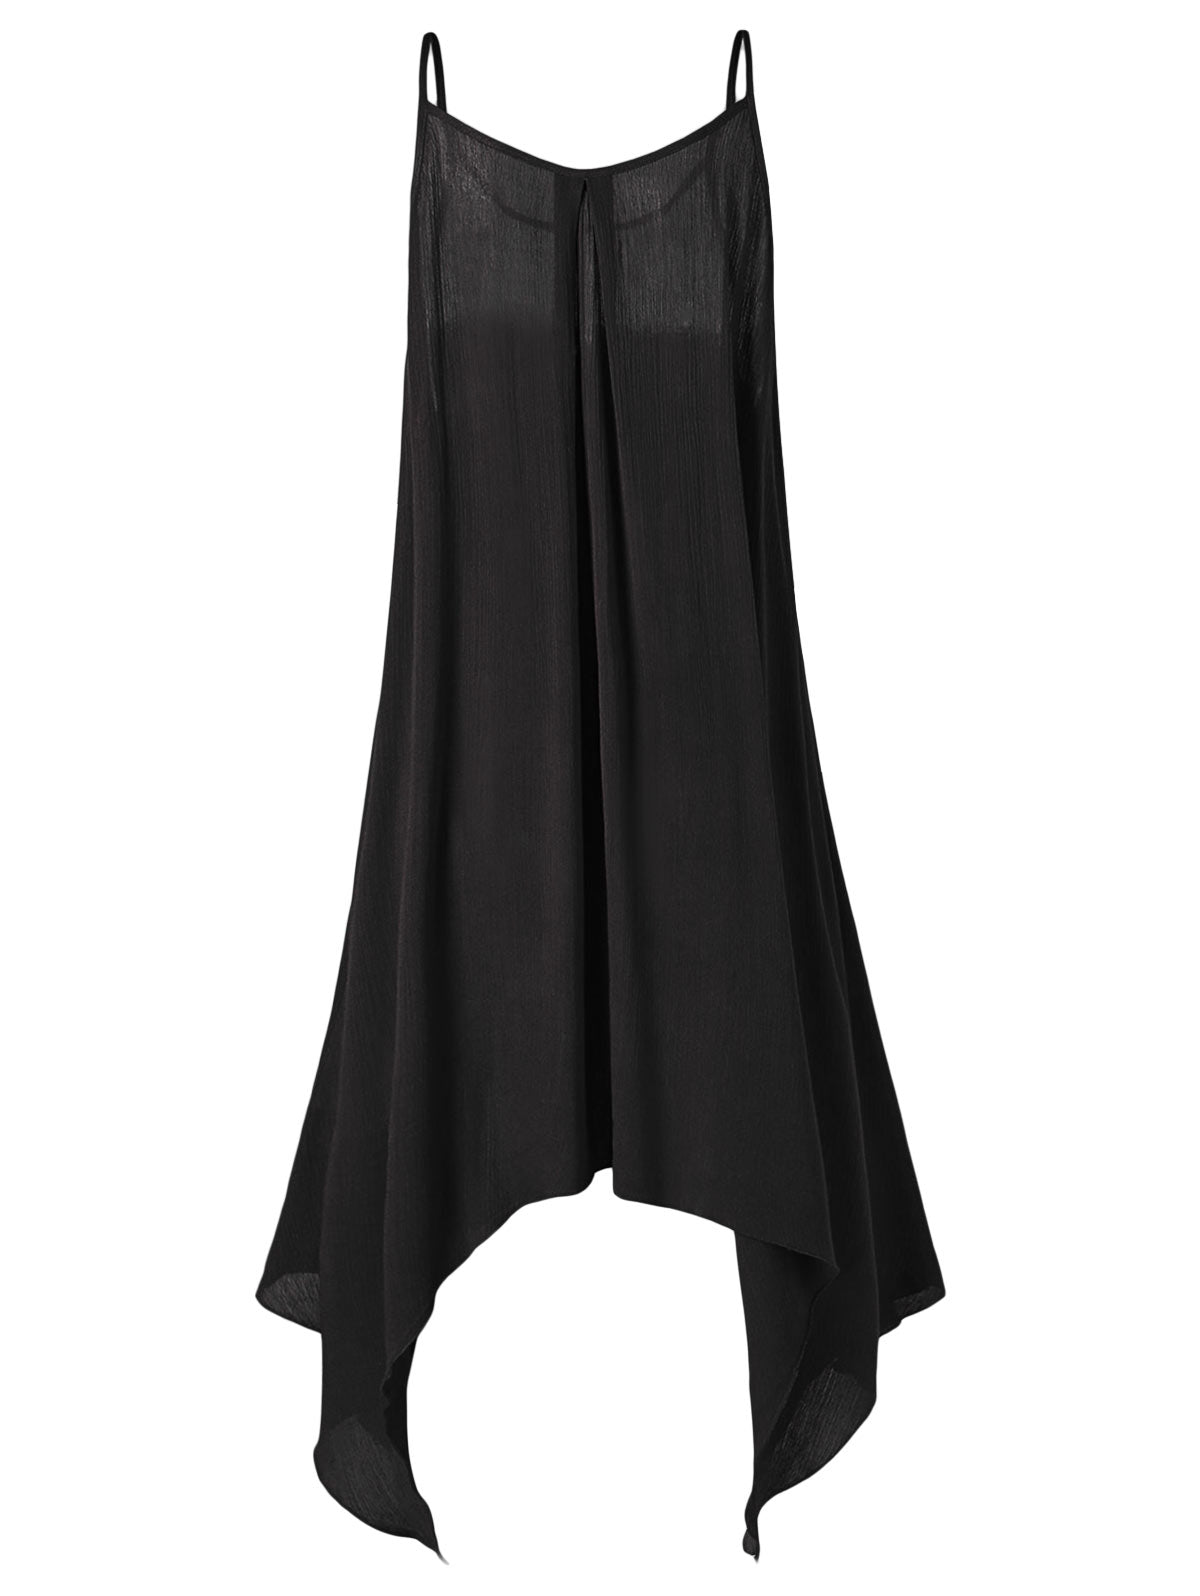 Lace Embellished Plus Size Asymmetrical Slip Dress - Plushlegacy